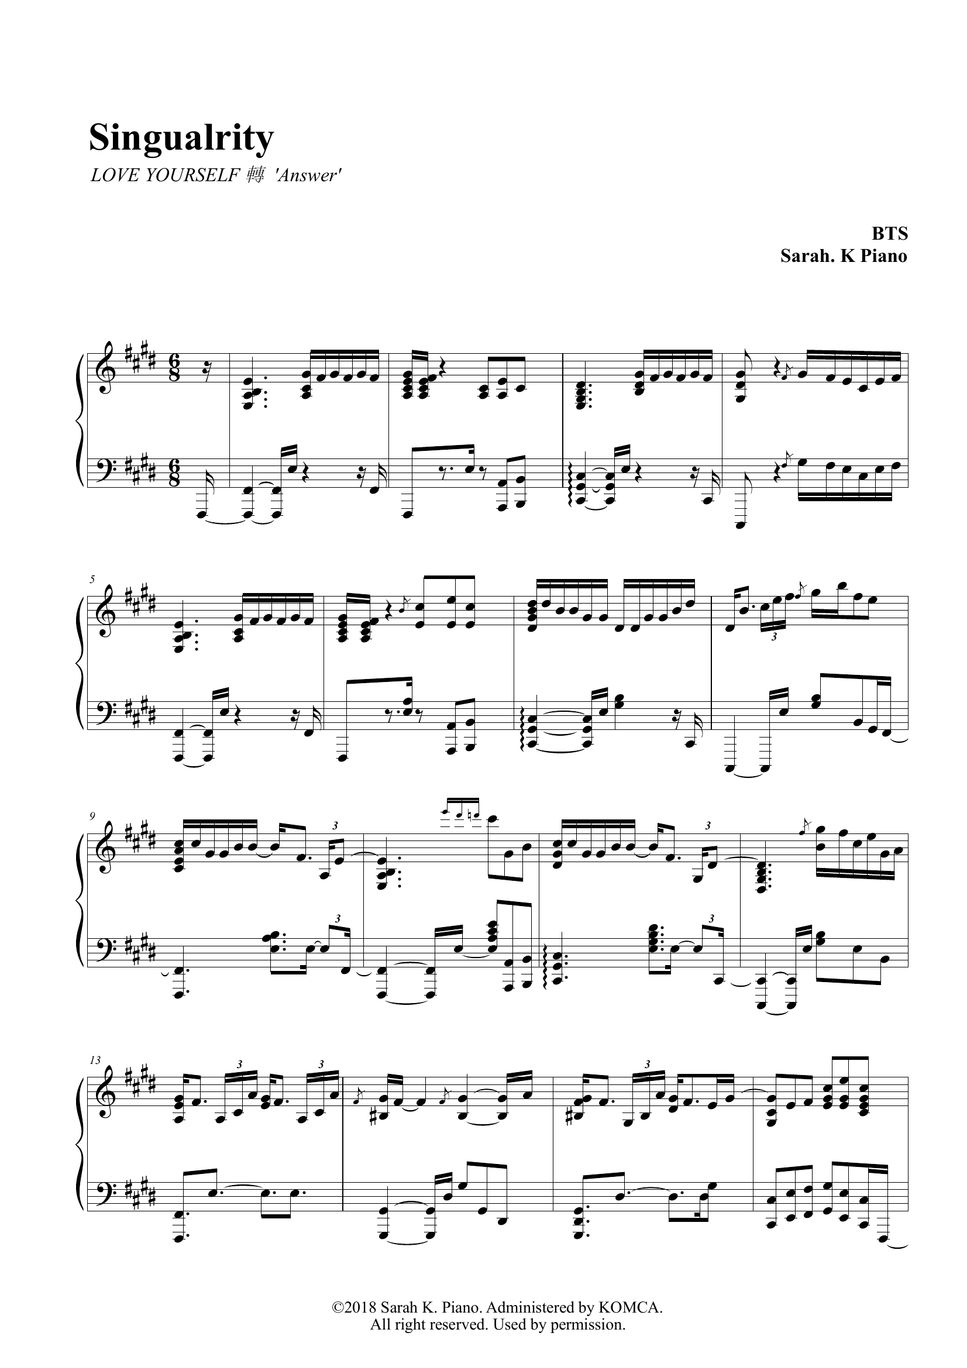 BTS - by Sarah.K Piano Sheet